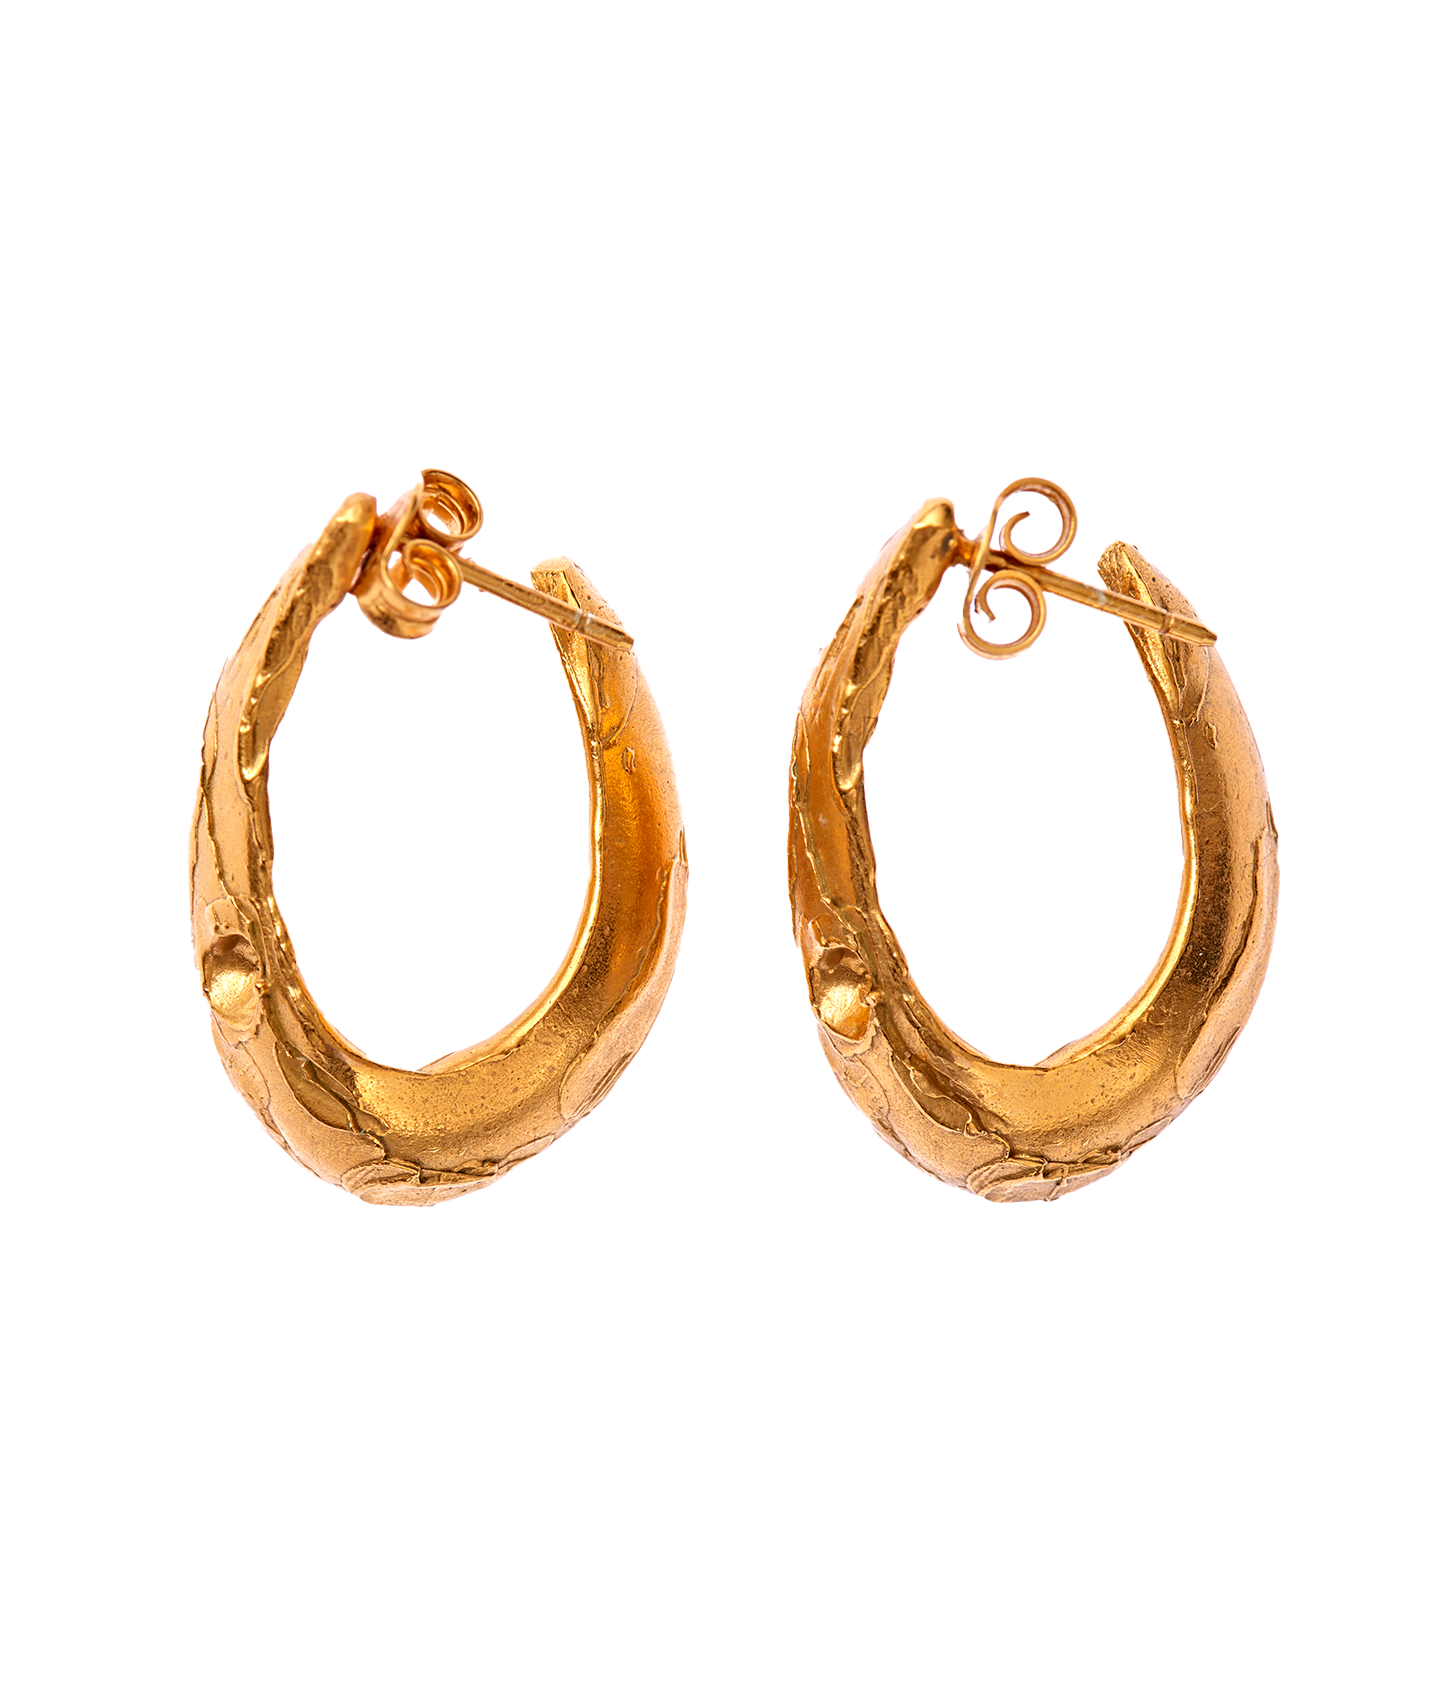 The Surreal Hoop Earrings | 24k Gold-Plated | Alighieri Jewellery